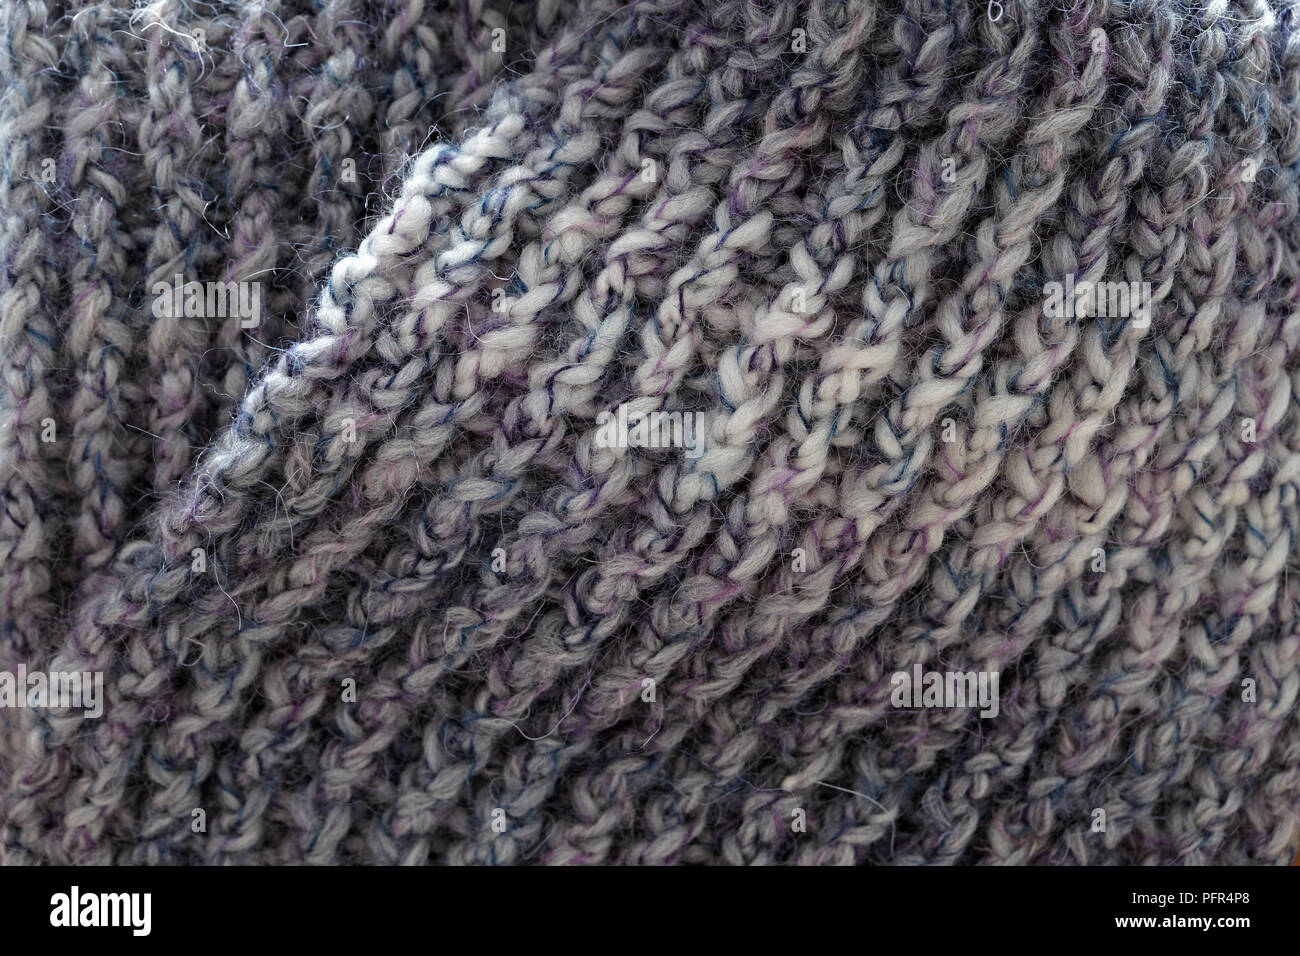 Violett-Grau, häkeln Rippe stitch Schal, close-up Stockfoto